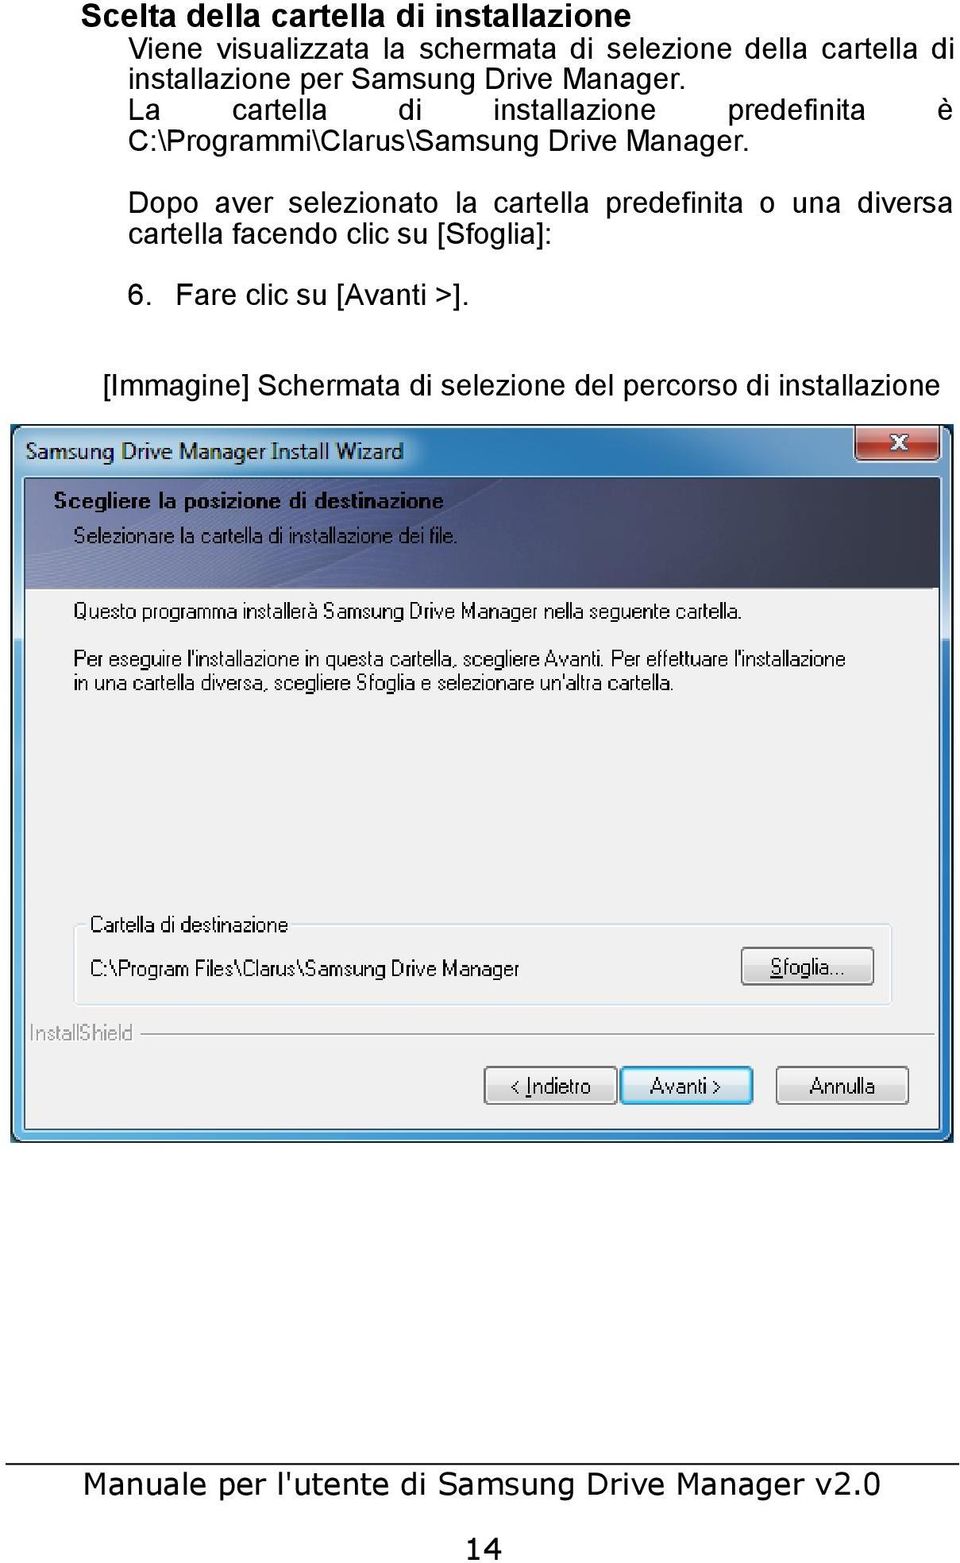 La cartella di installazione predefinita è C:\Programmi\Clarus\Samsung Drive Manager.